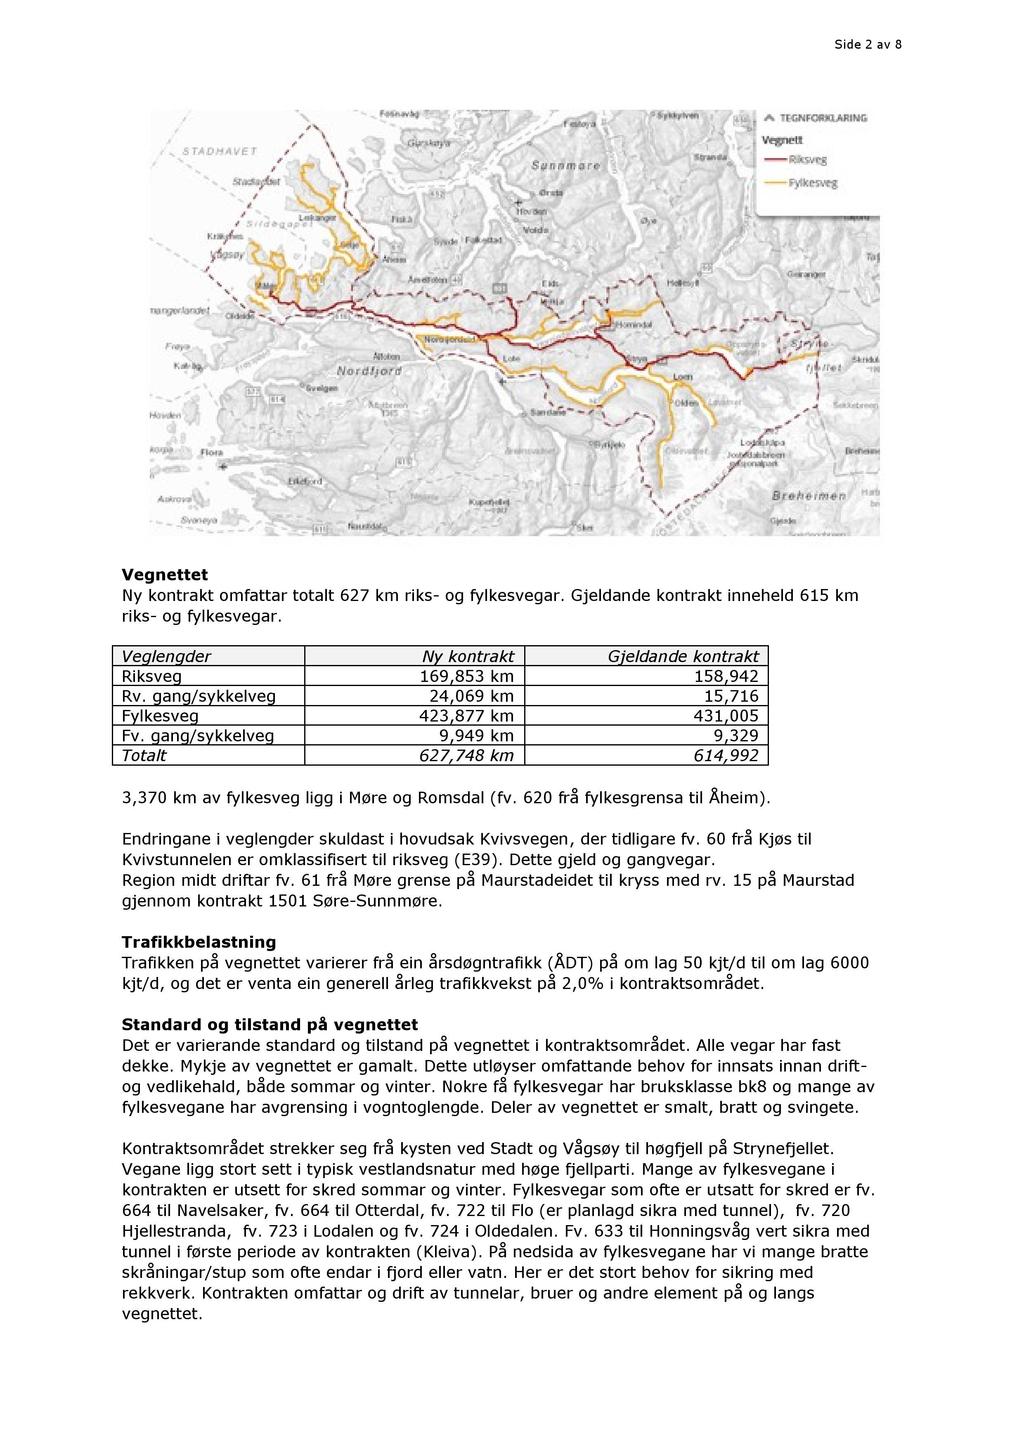 Side 2 av 8 Vegnettet Ny k ontrakt omfatta r to t alt 627 km riks - og fylkesvegar. G jeldande kontrakt inneheld 615 km riks - og fylkesvegar.